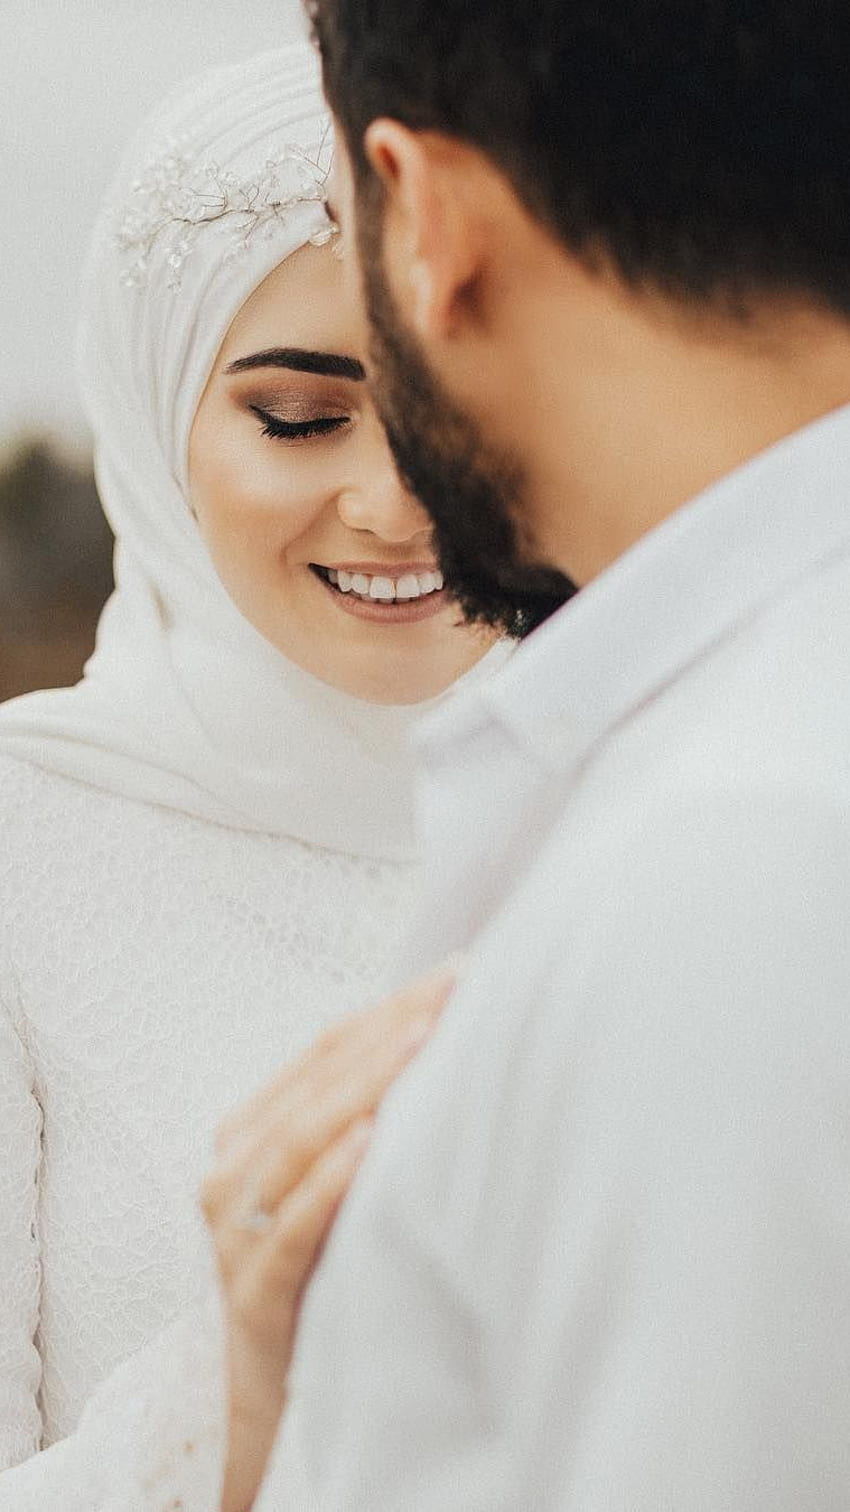 Pasangan Muslim, Suami Muslim, Istri Muslim, Pasangan Cinta wallpaper ponsel HD